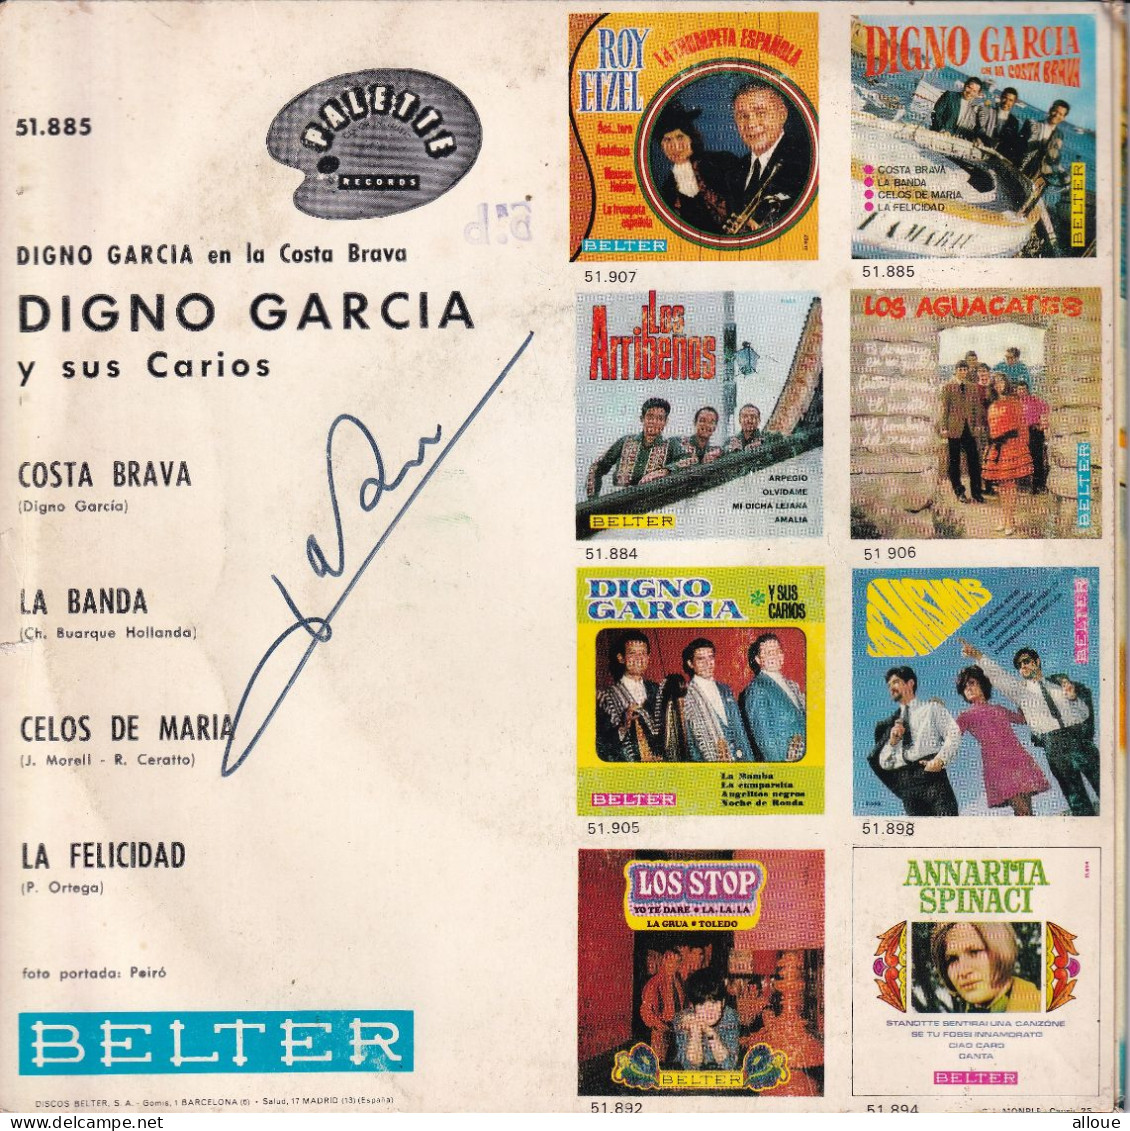 DIGNO GARCIA EN LA COSTA BRAVA - ESPAGNE EP - COSTA BRAVA + 3 - Autres - Musique Espagnole